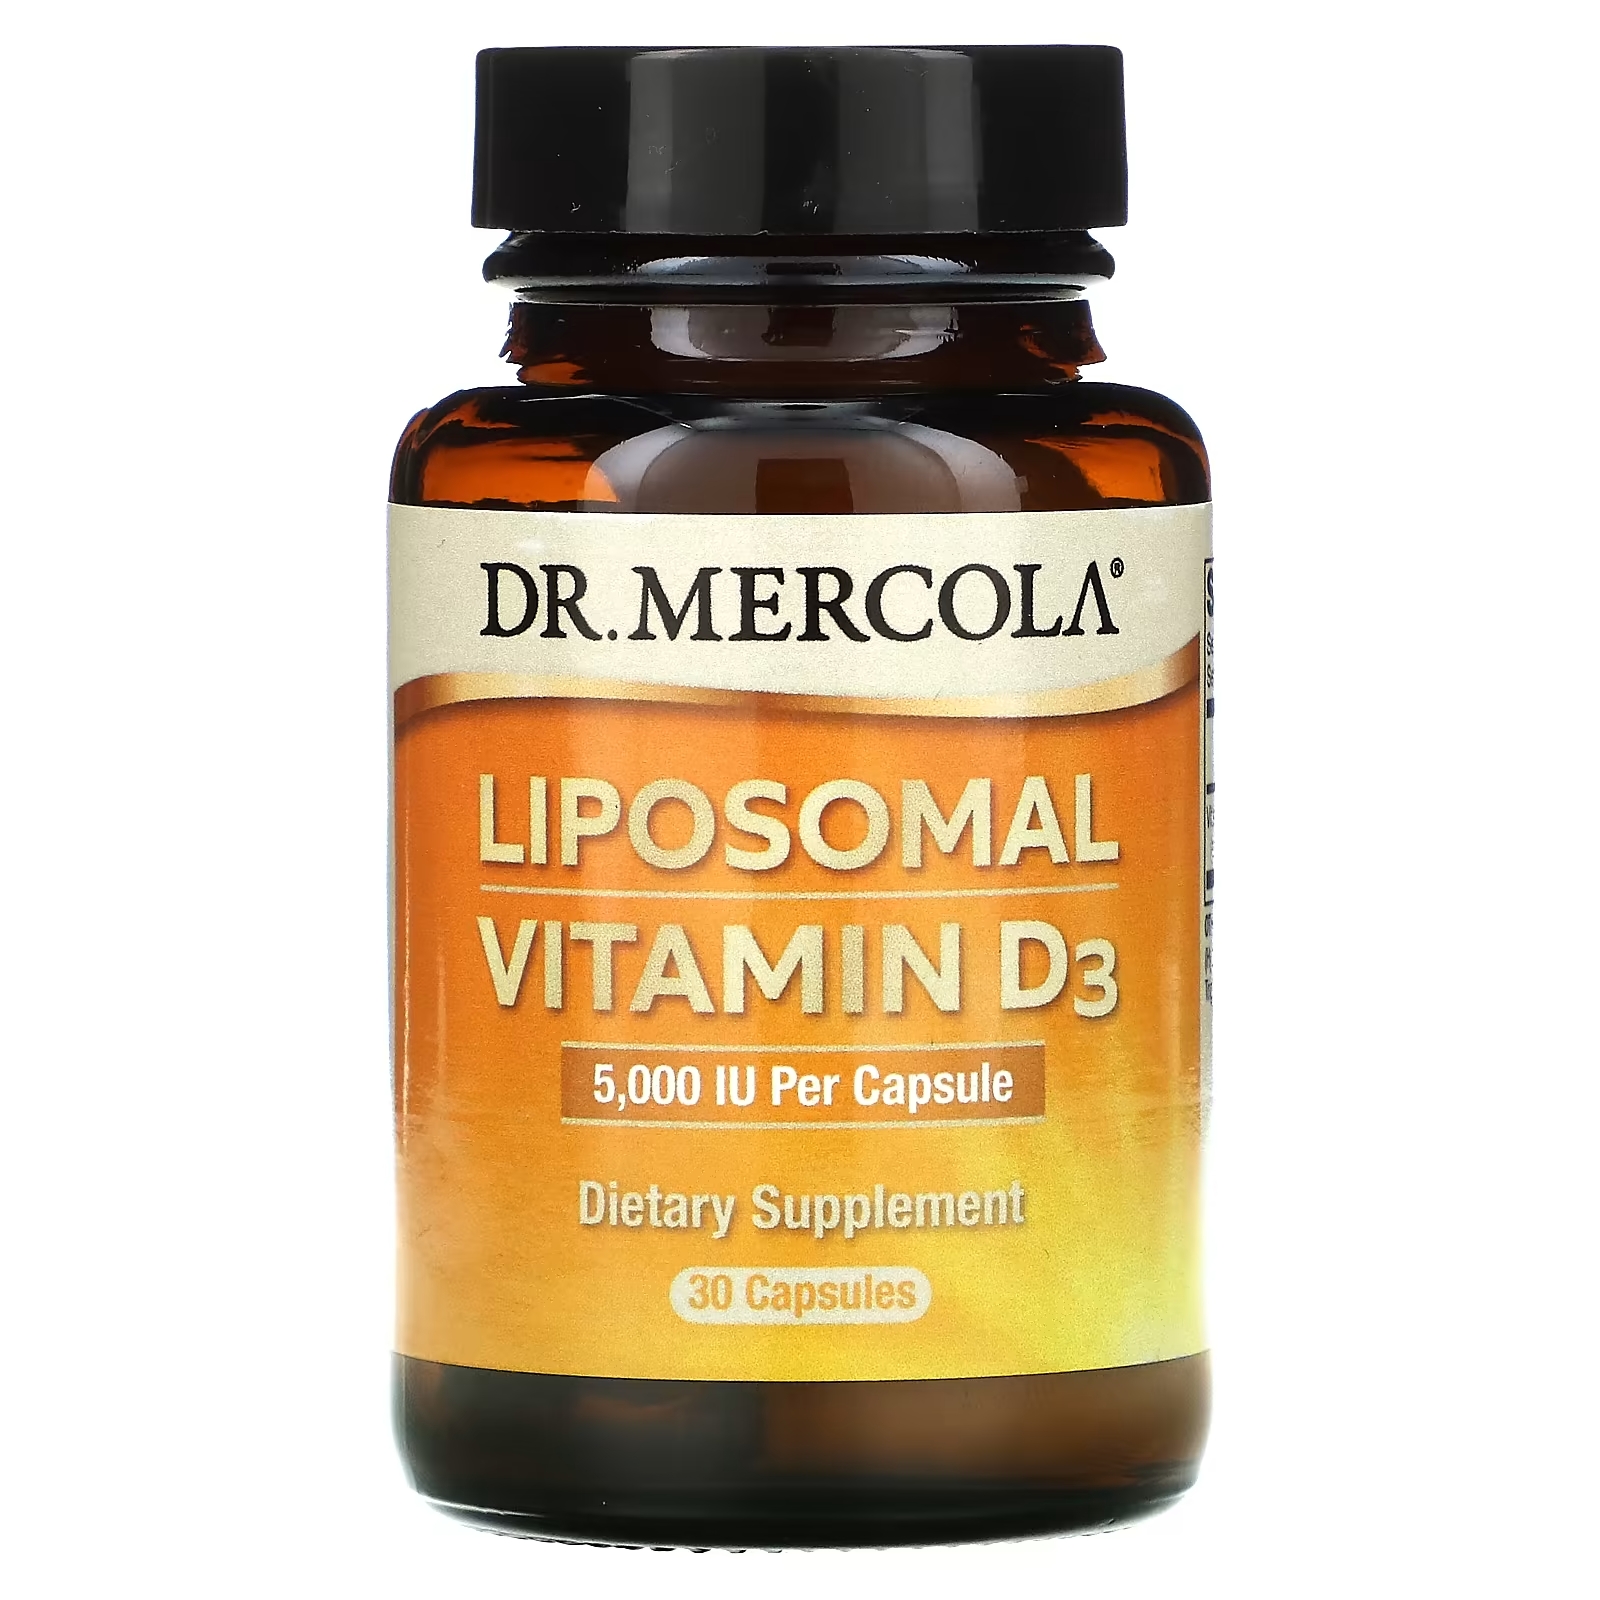 Dr. Mercola липосомальный витамин D3 5000 МЕ, 30 капсул dr mercola липосомальный витамин d3 1000 ме 30 капсул